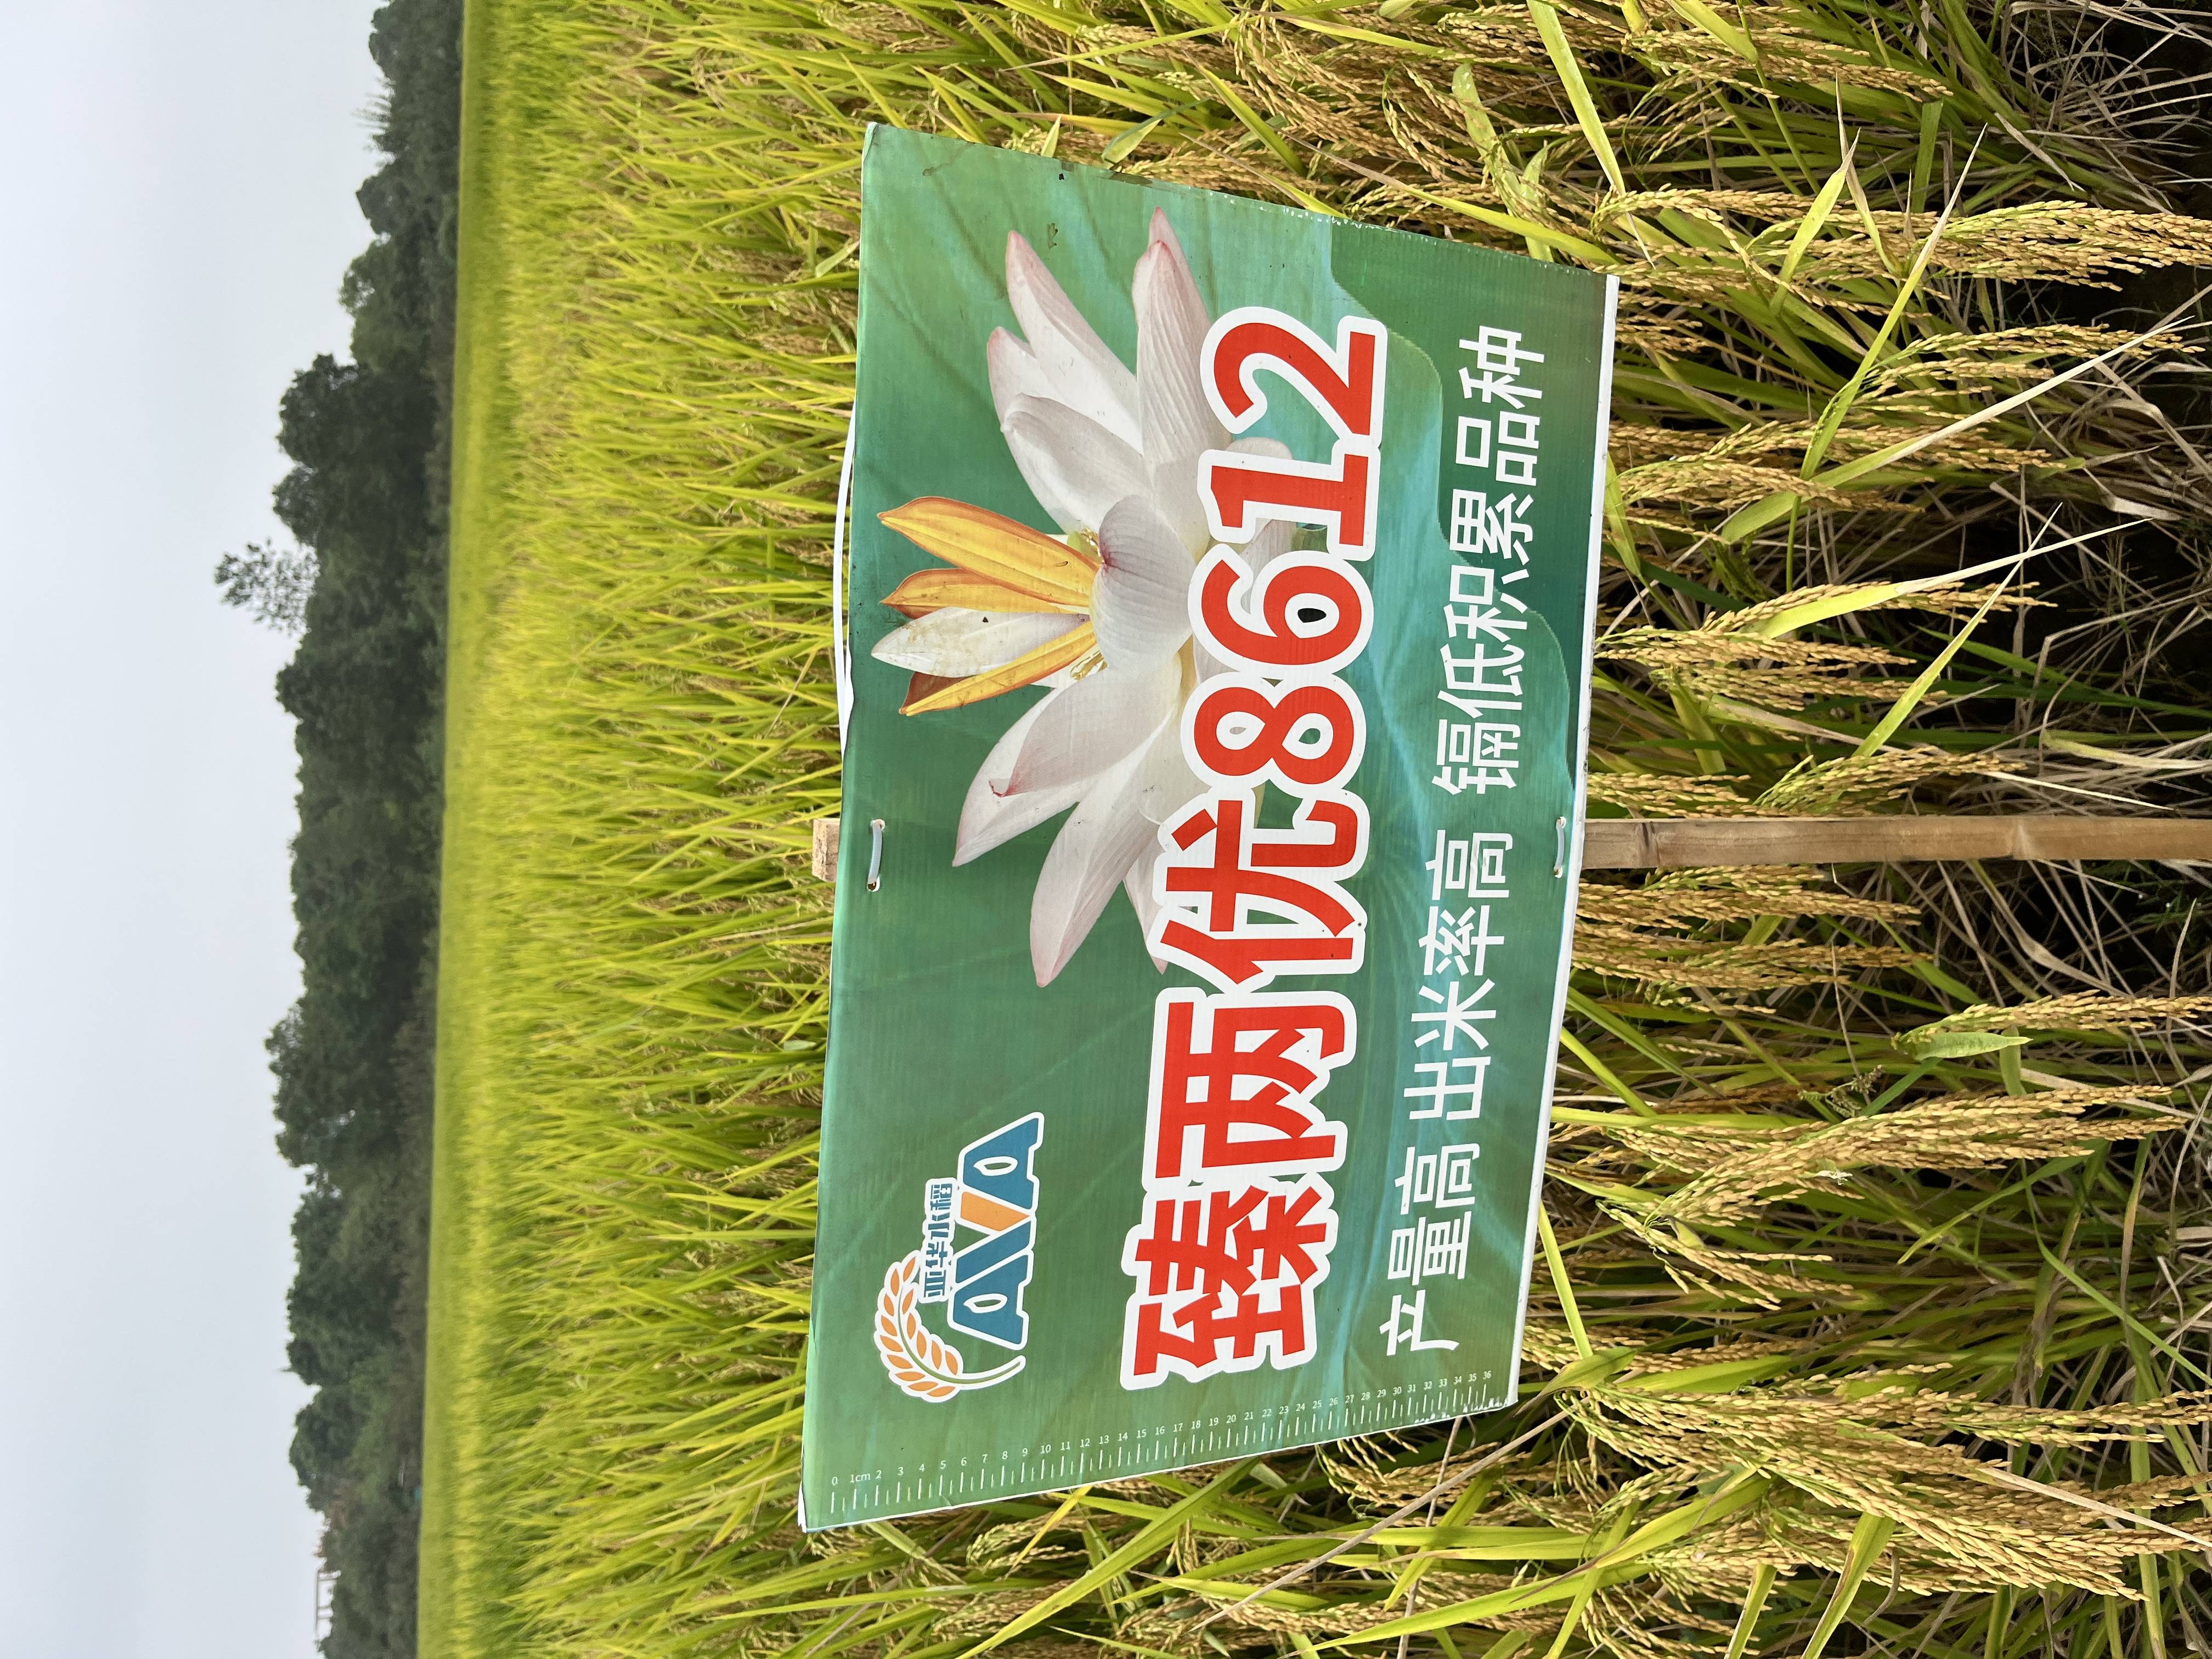 玮两优8612水稻品种图片